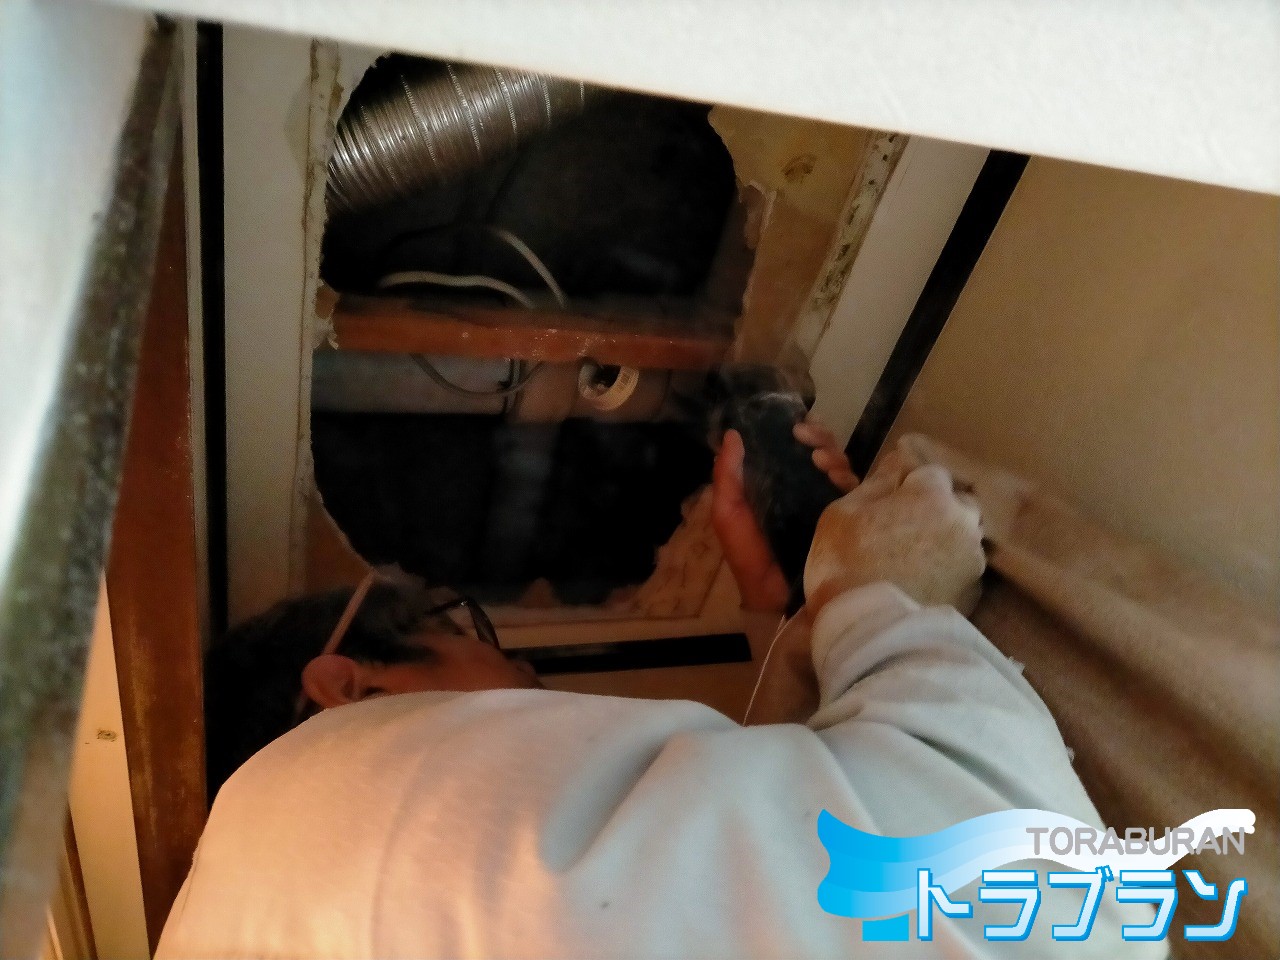 賃貸 漏水 修繕 洗濯排水 漏れ 天井 収納 水漏れ 排水工事 神戸市 トラブラン